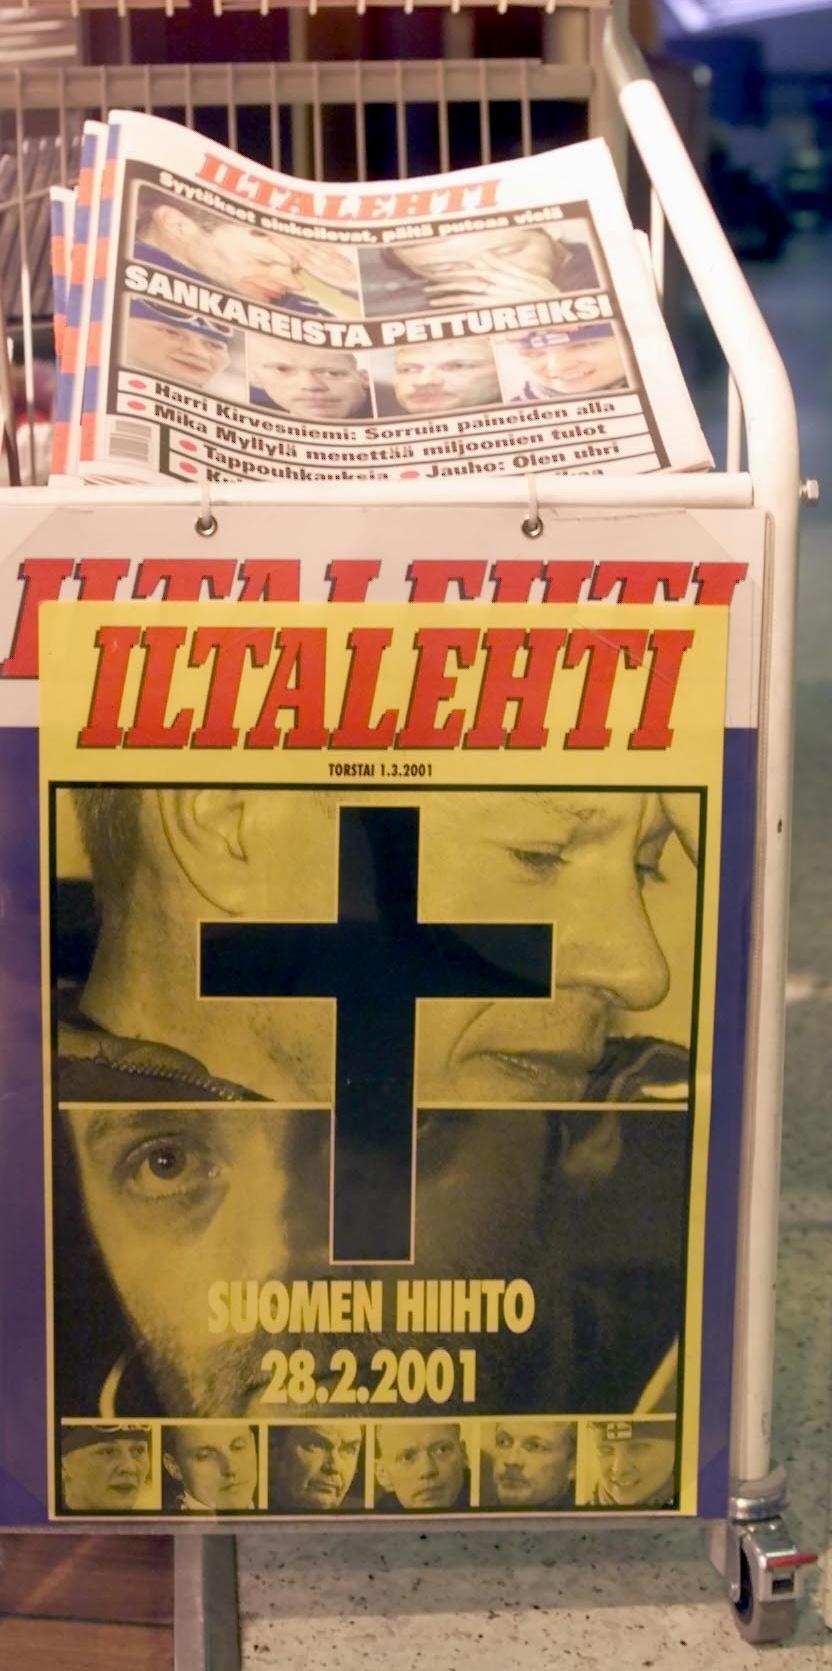 De finske avisene var nådeløse. Slik så førstesiden i Iltalehti ut dagen etter at Mika Myllylä og Harri Kirvesniemi også ble avslørt for doping.